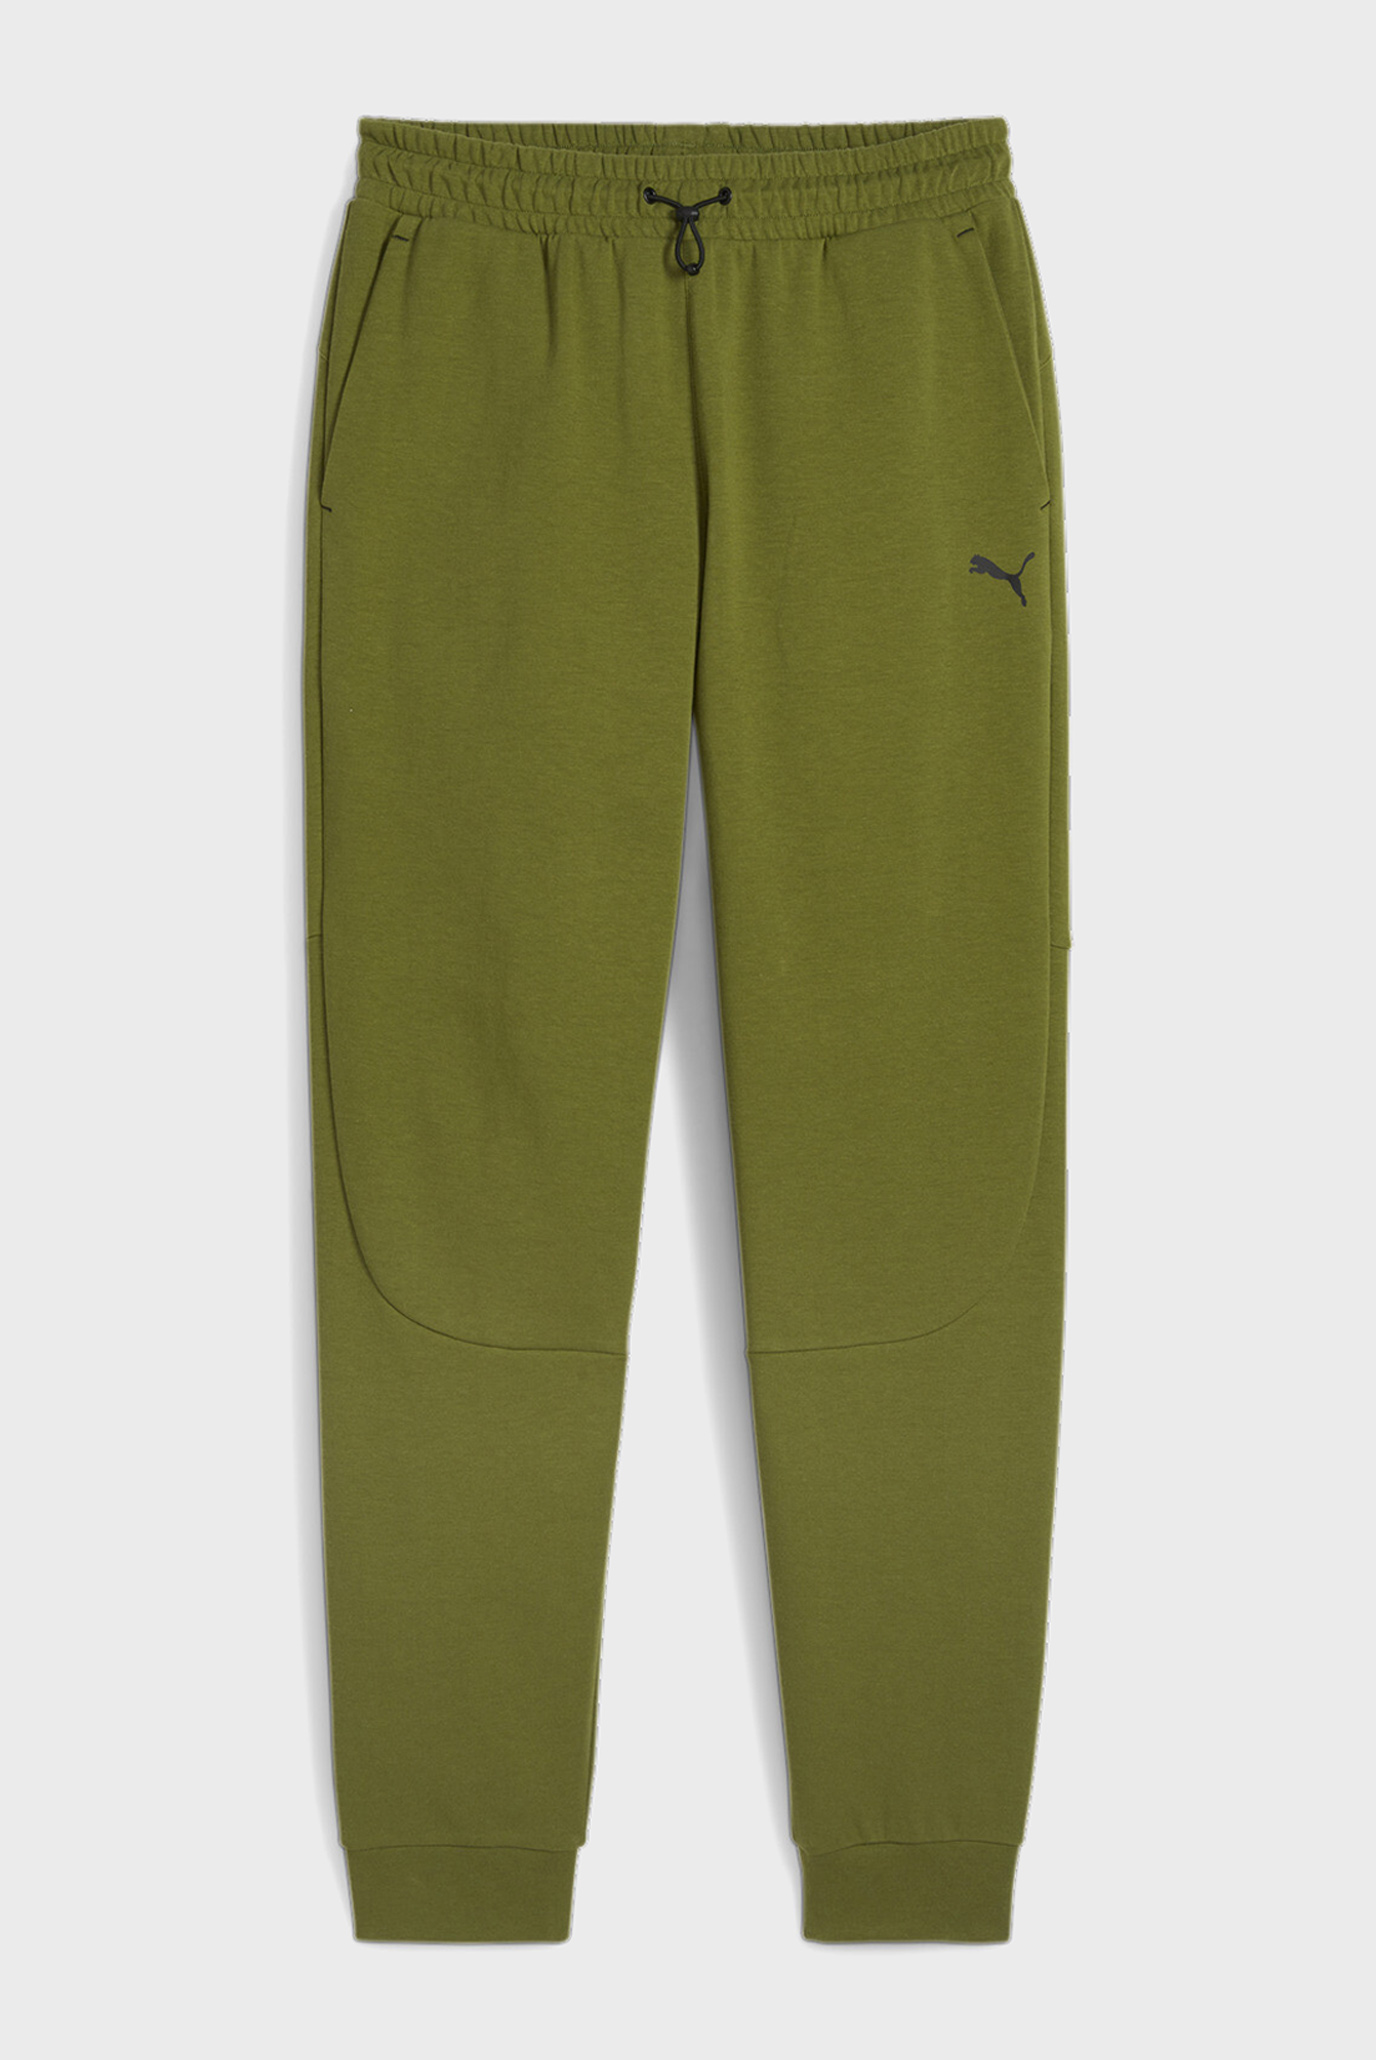 Мужские оливковые спортивные брюки RAD/CAL Men's Sweatpants 1